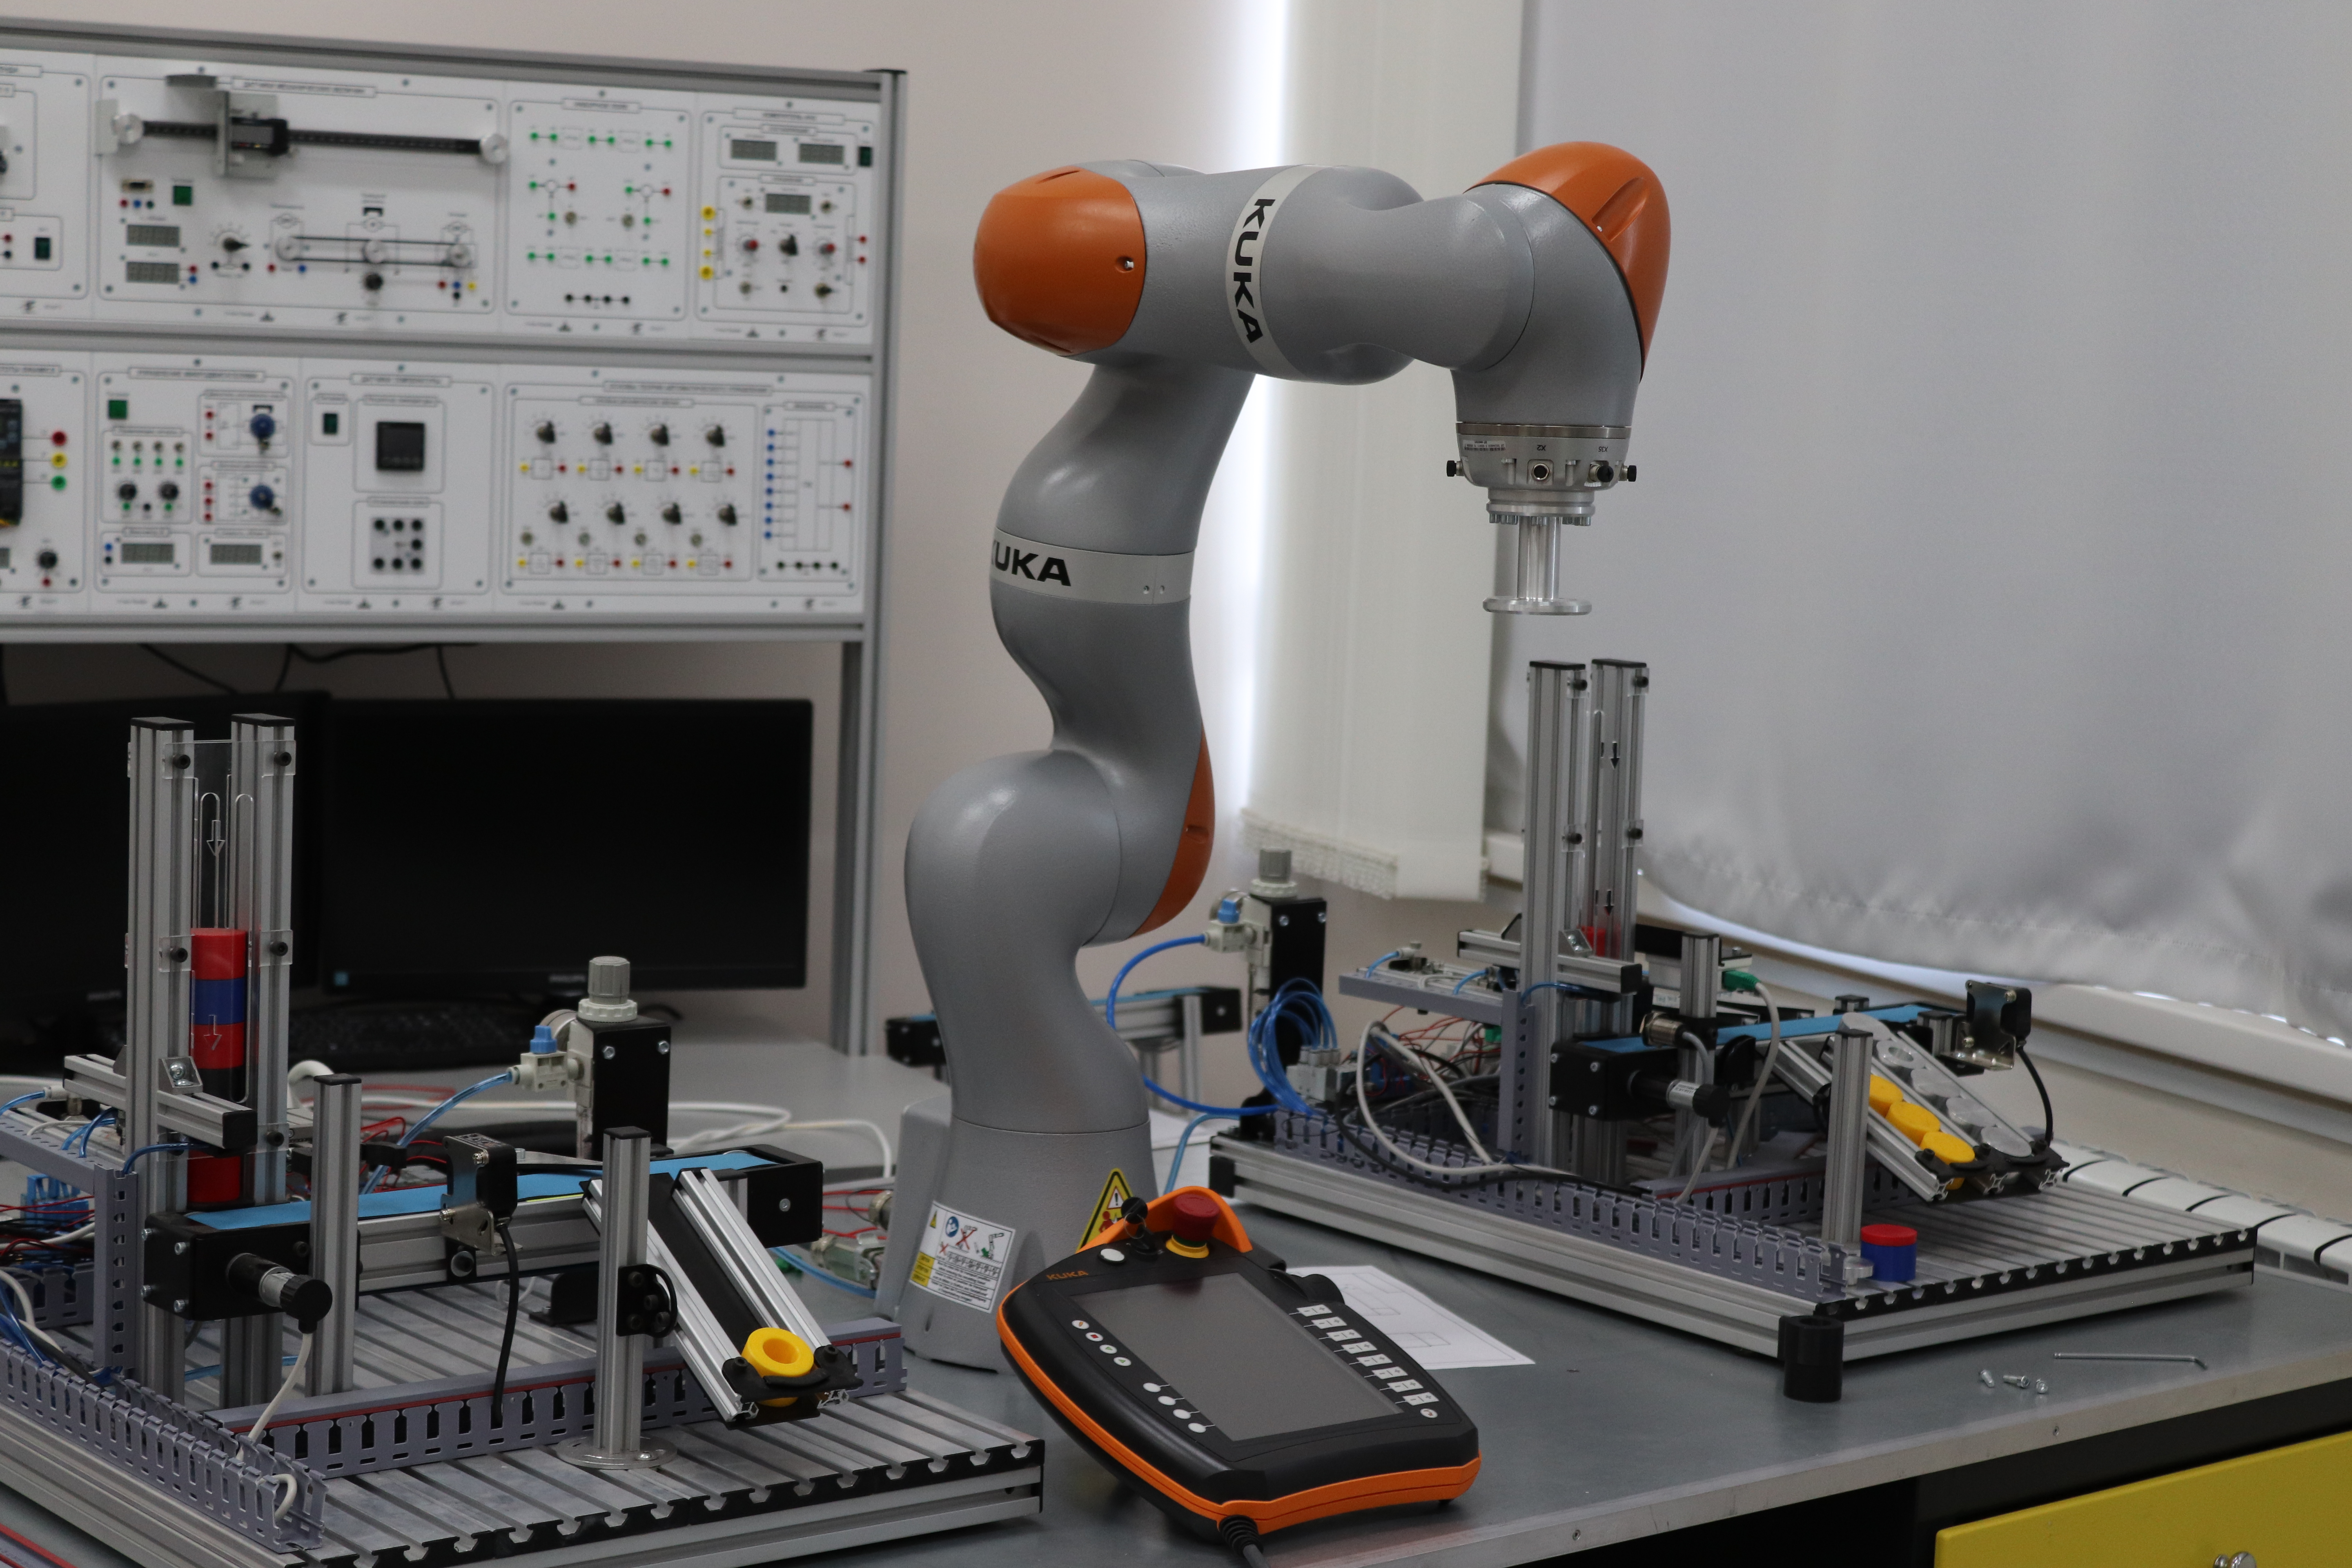 Робот легкой конструкции интеллектуальный промышленный помощник рабочего (LBR iiwa) – серийный коллаборативный робот компании «KUKA» с пультом «KUKA smartPAD» для контроллера «KUKA Sunrise Cabinet», способный работать совместно с человеком в едином простр